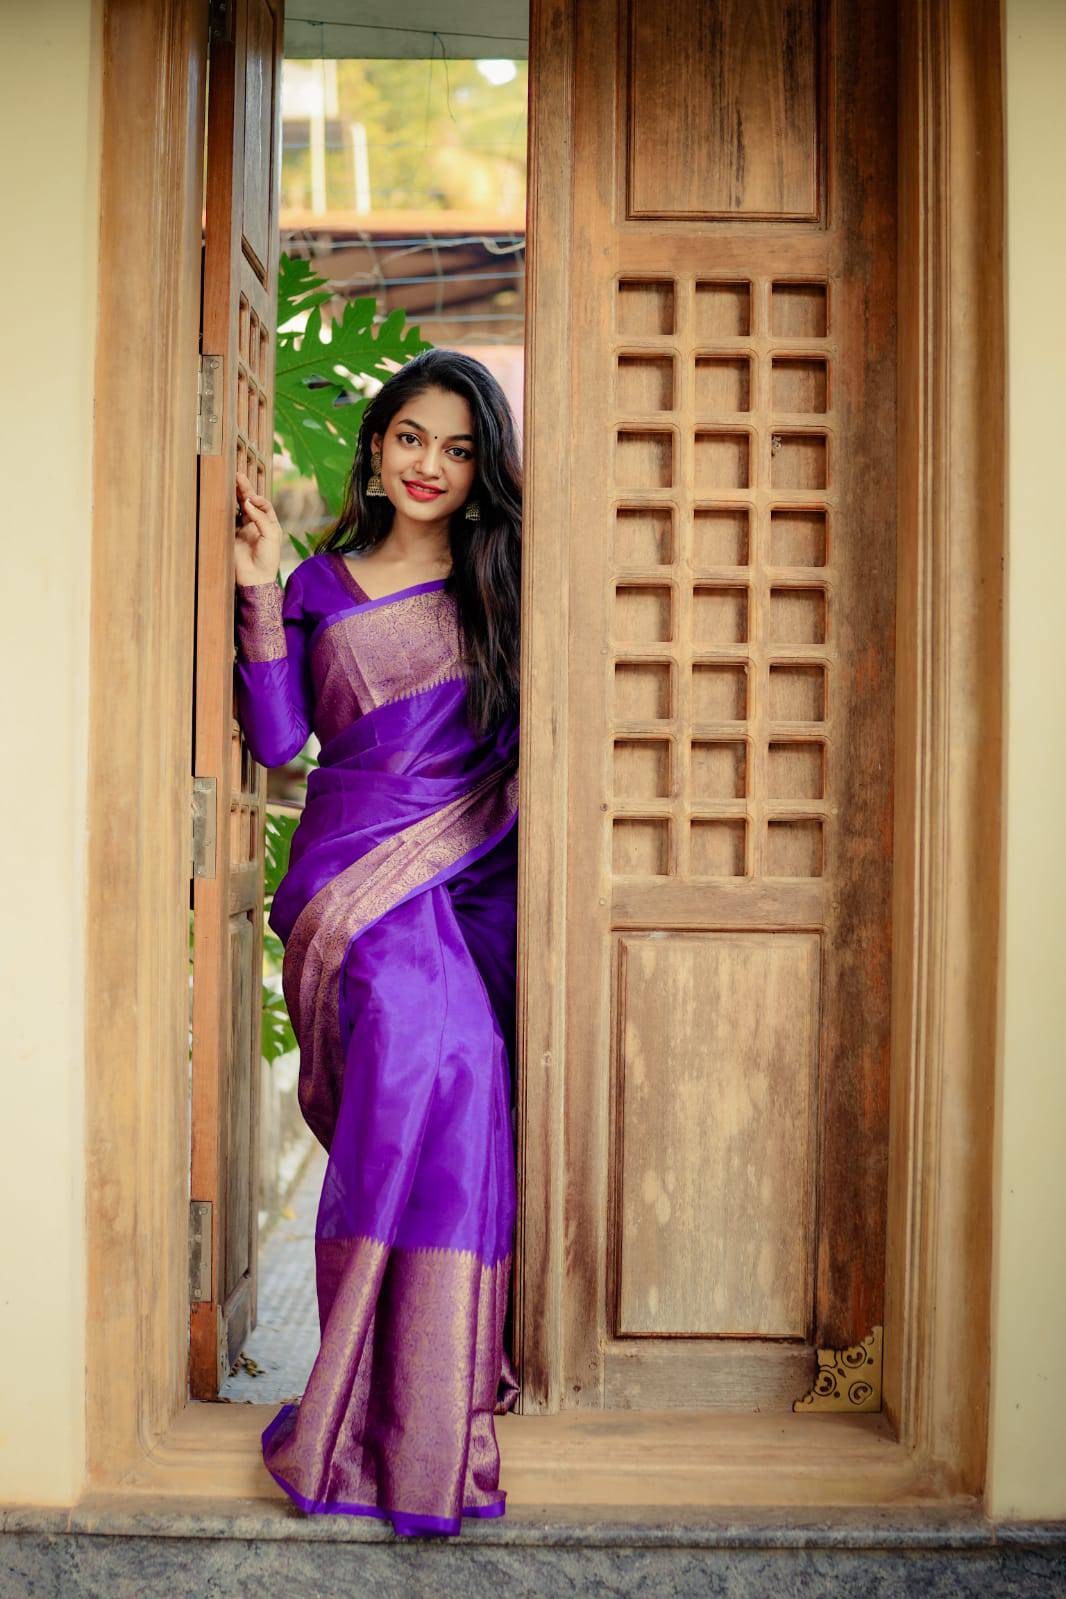 ivana awesome purple saree actress photos download hd